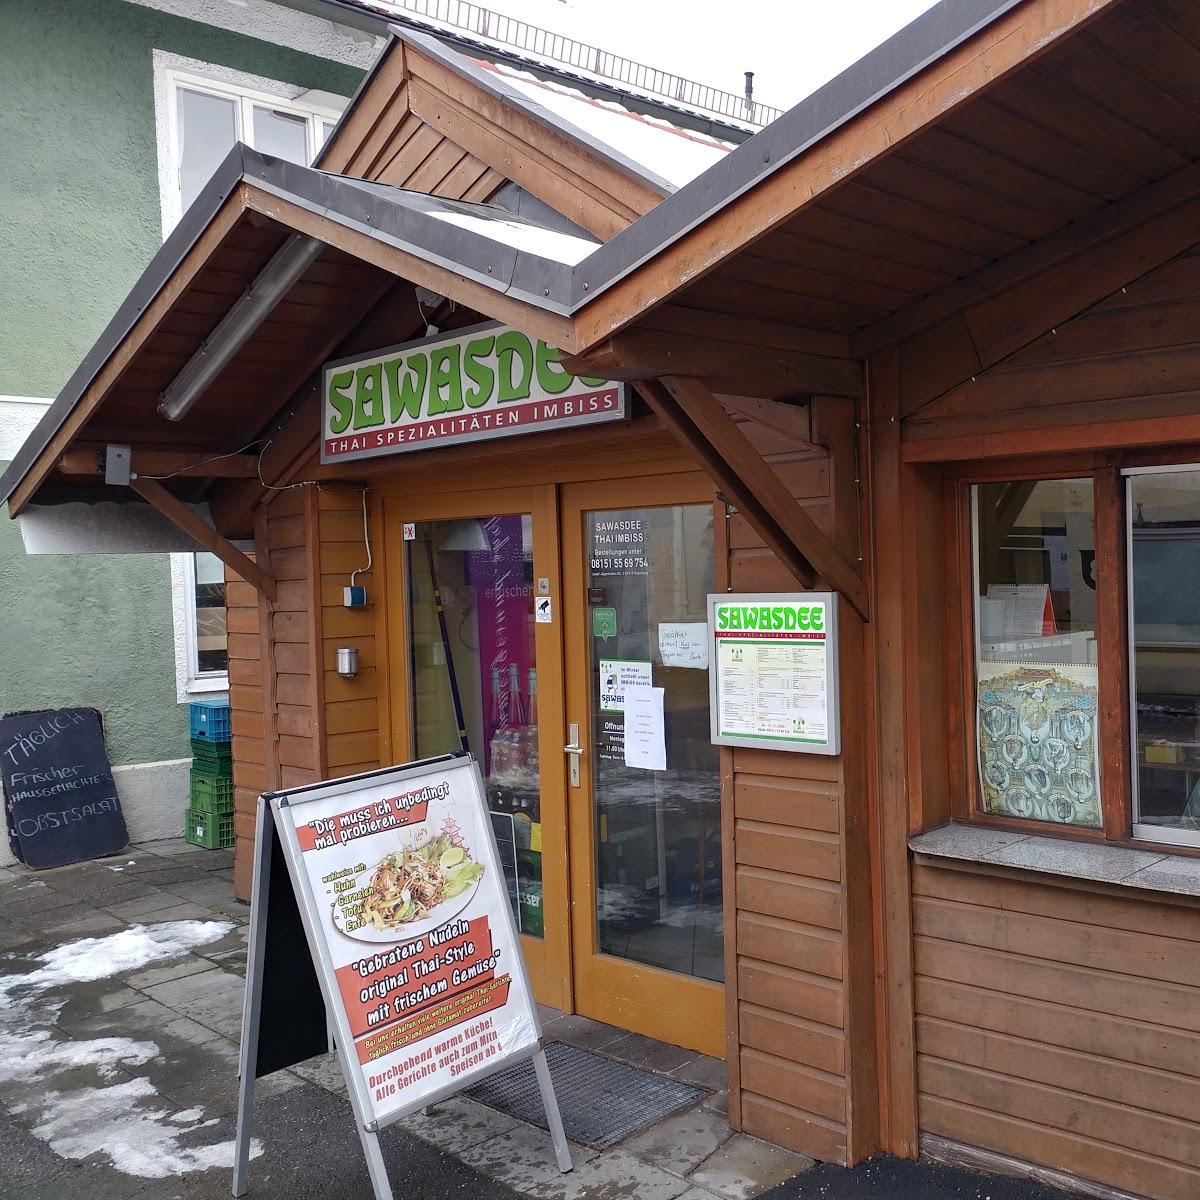 Restaurant "Restaurant Sawasdee" in Starnberg